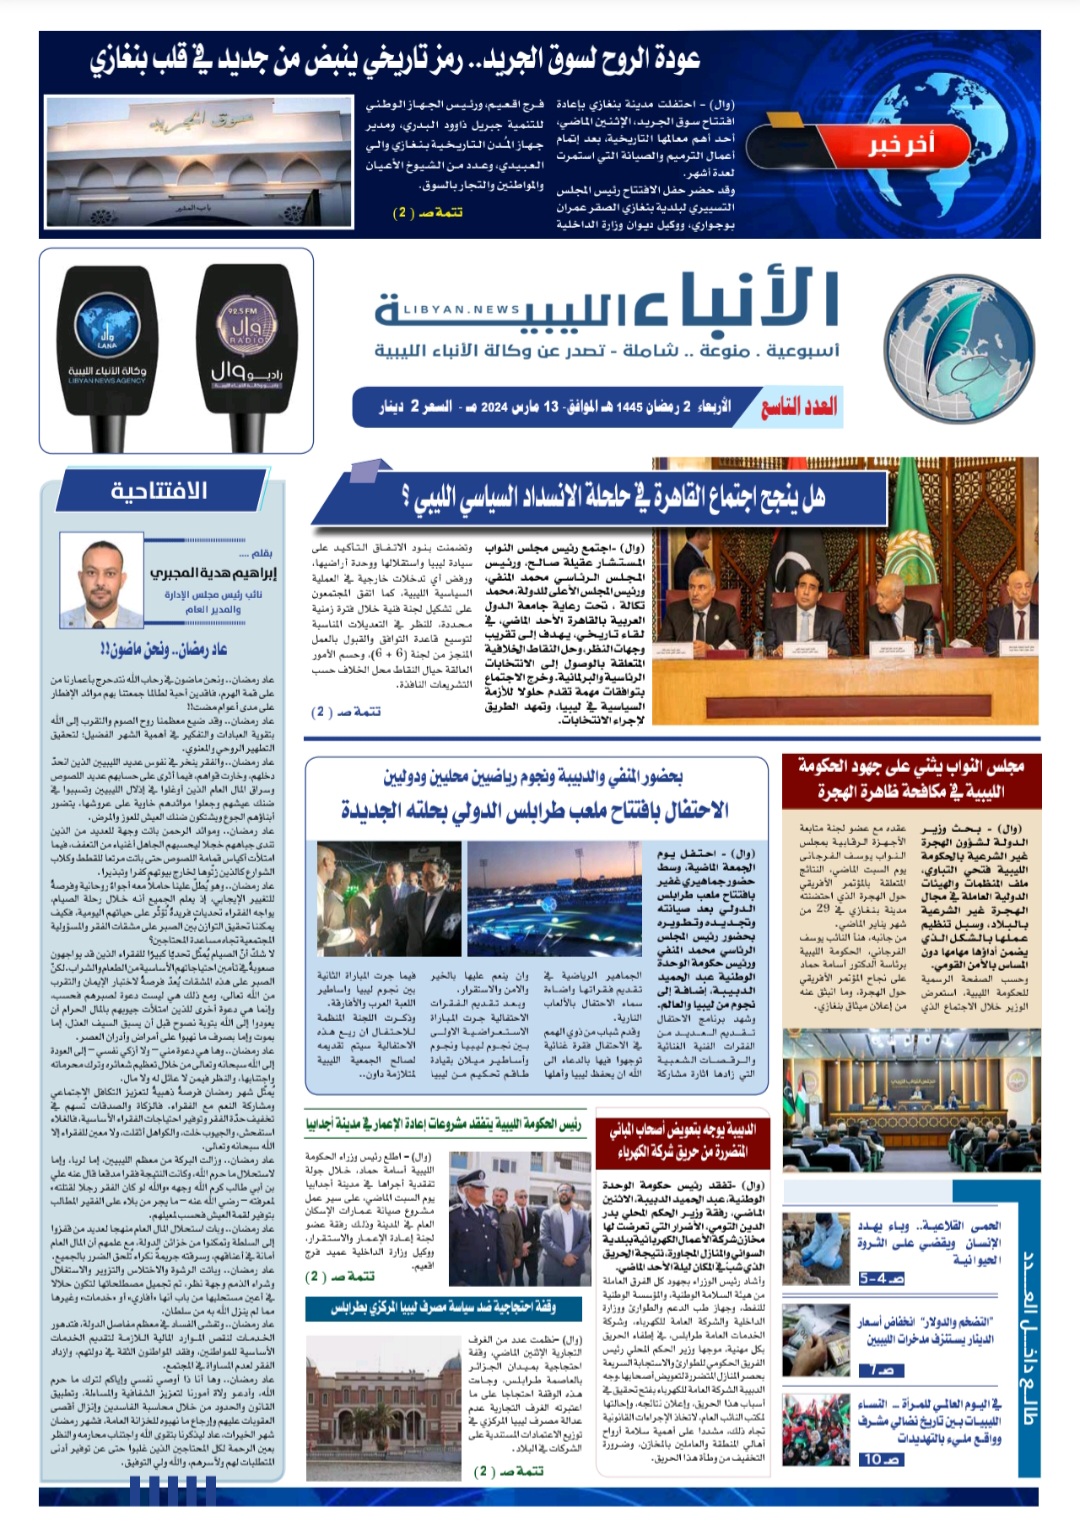 صحيفة الأنباء الليبية (العدد التاسع)